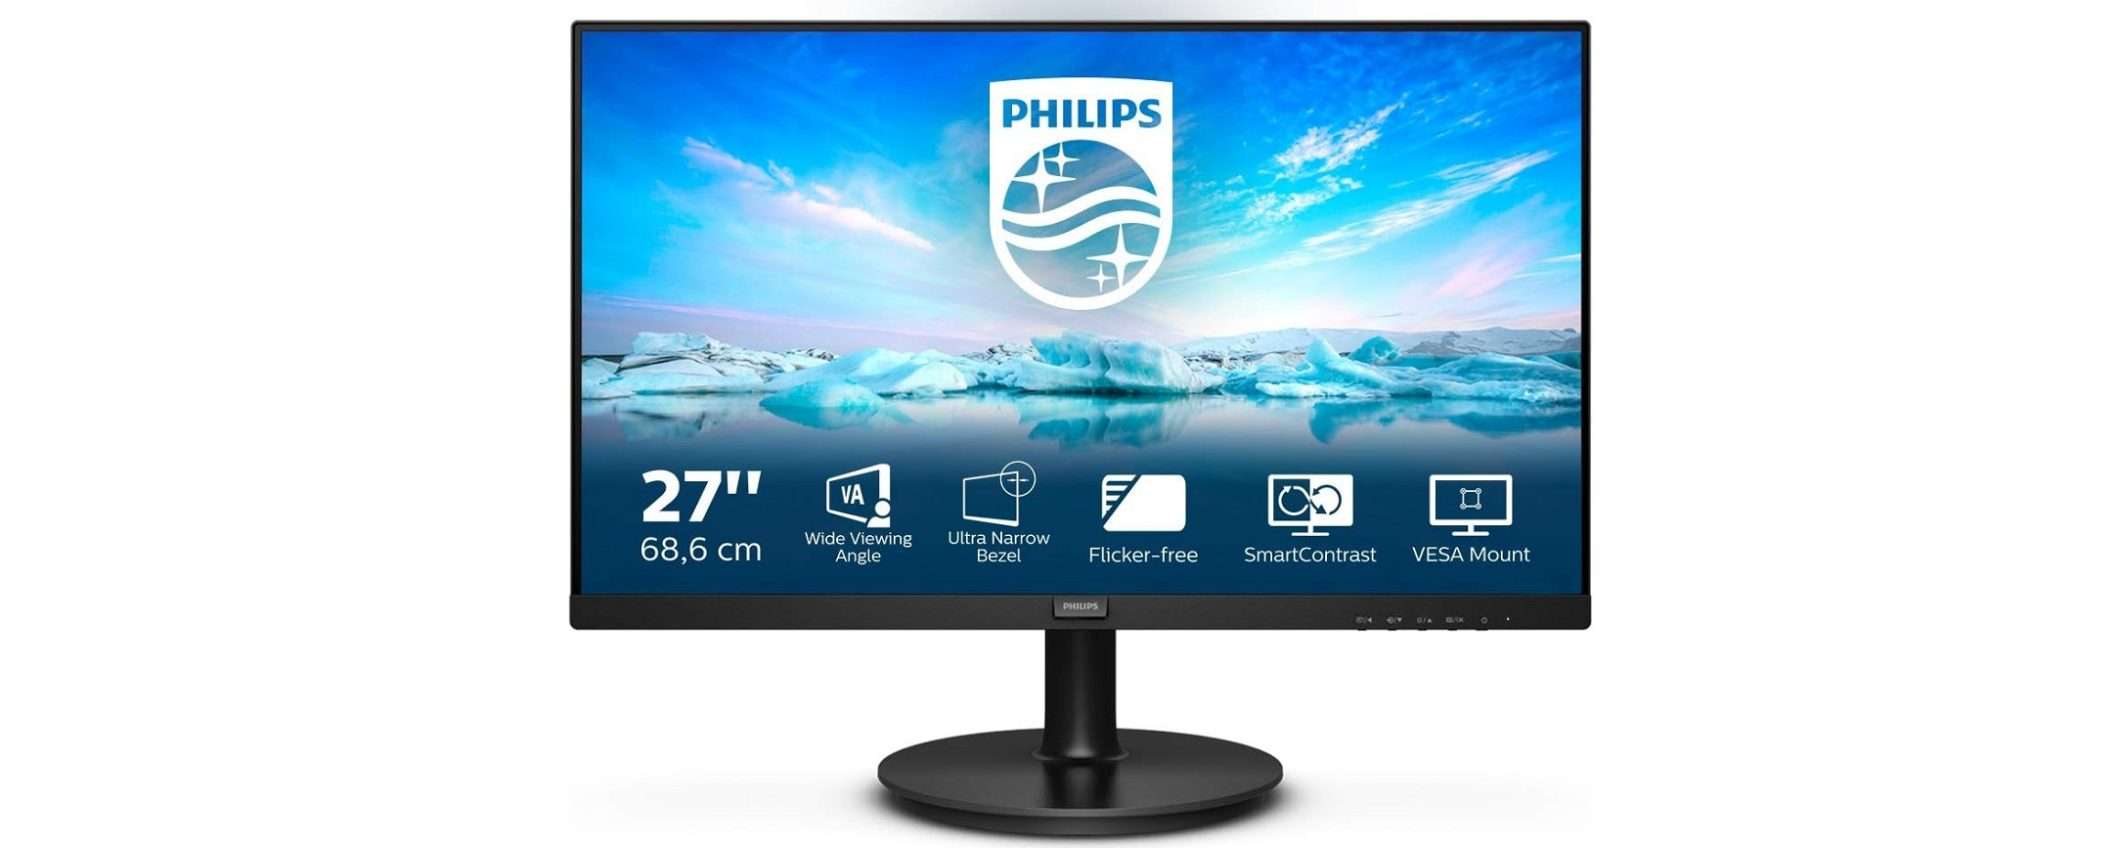 Questo monitor da 27 pollici costa solo 99€ su Amazon: è un VERO AFFARE